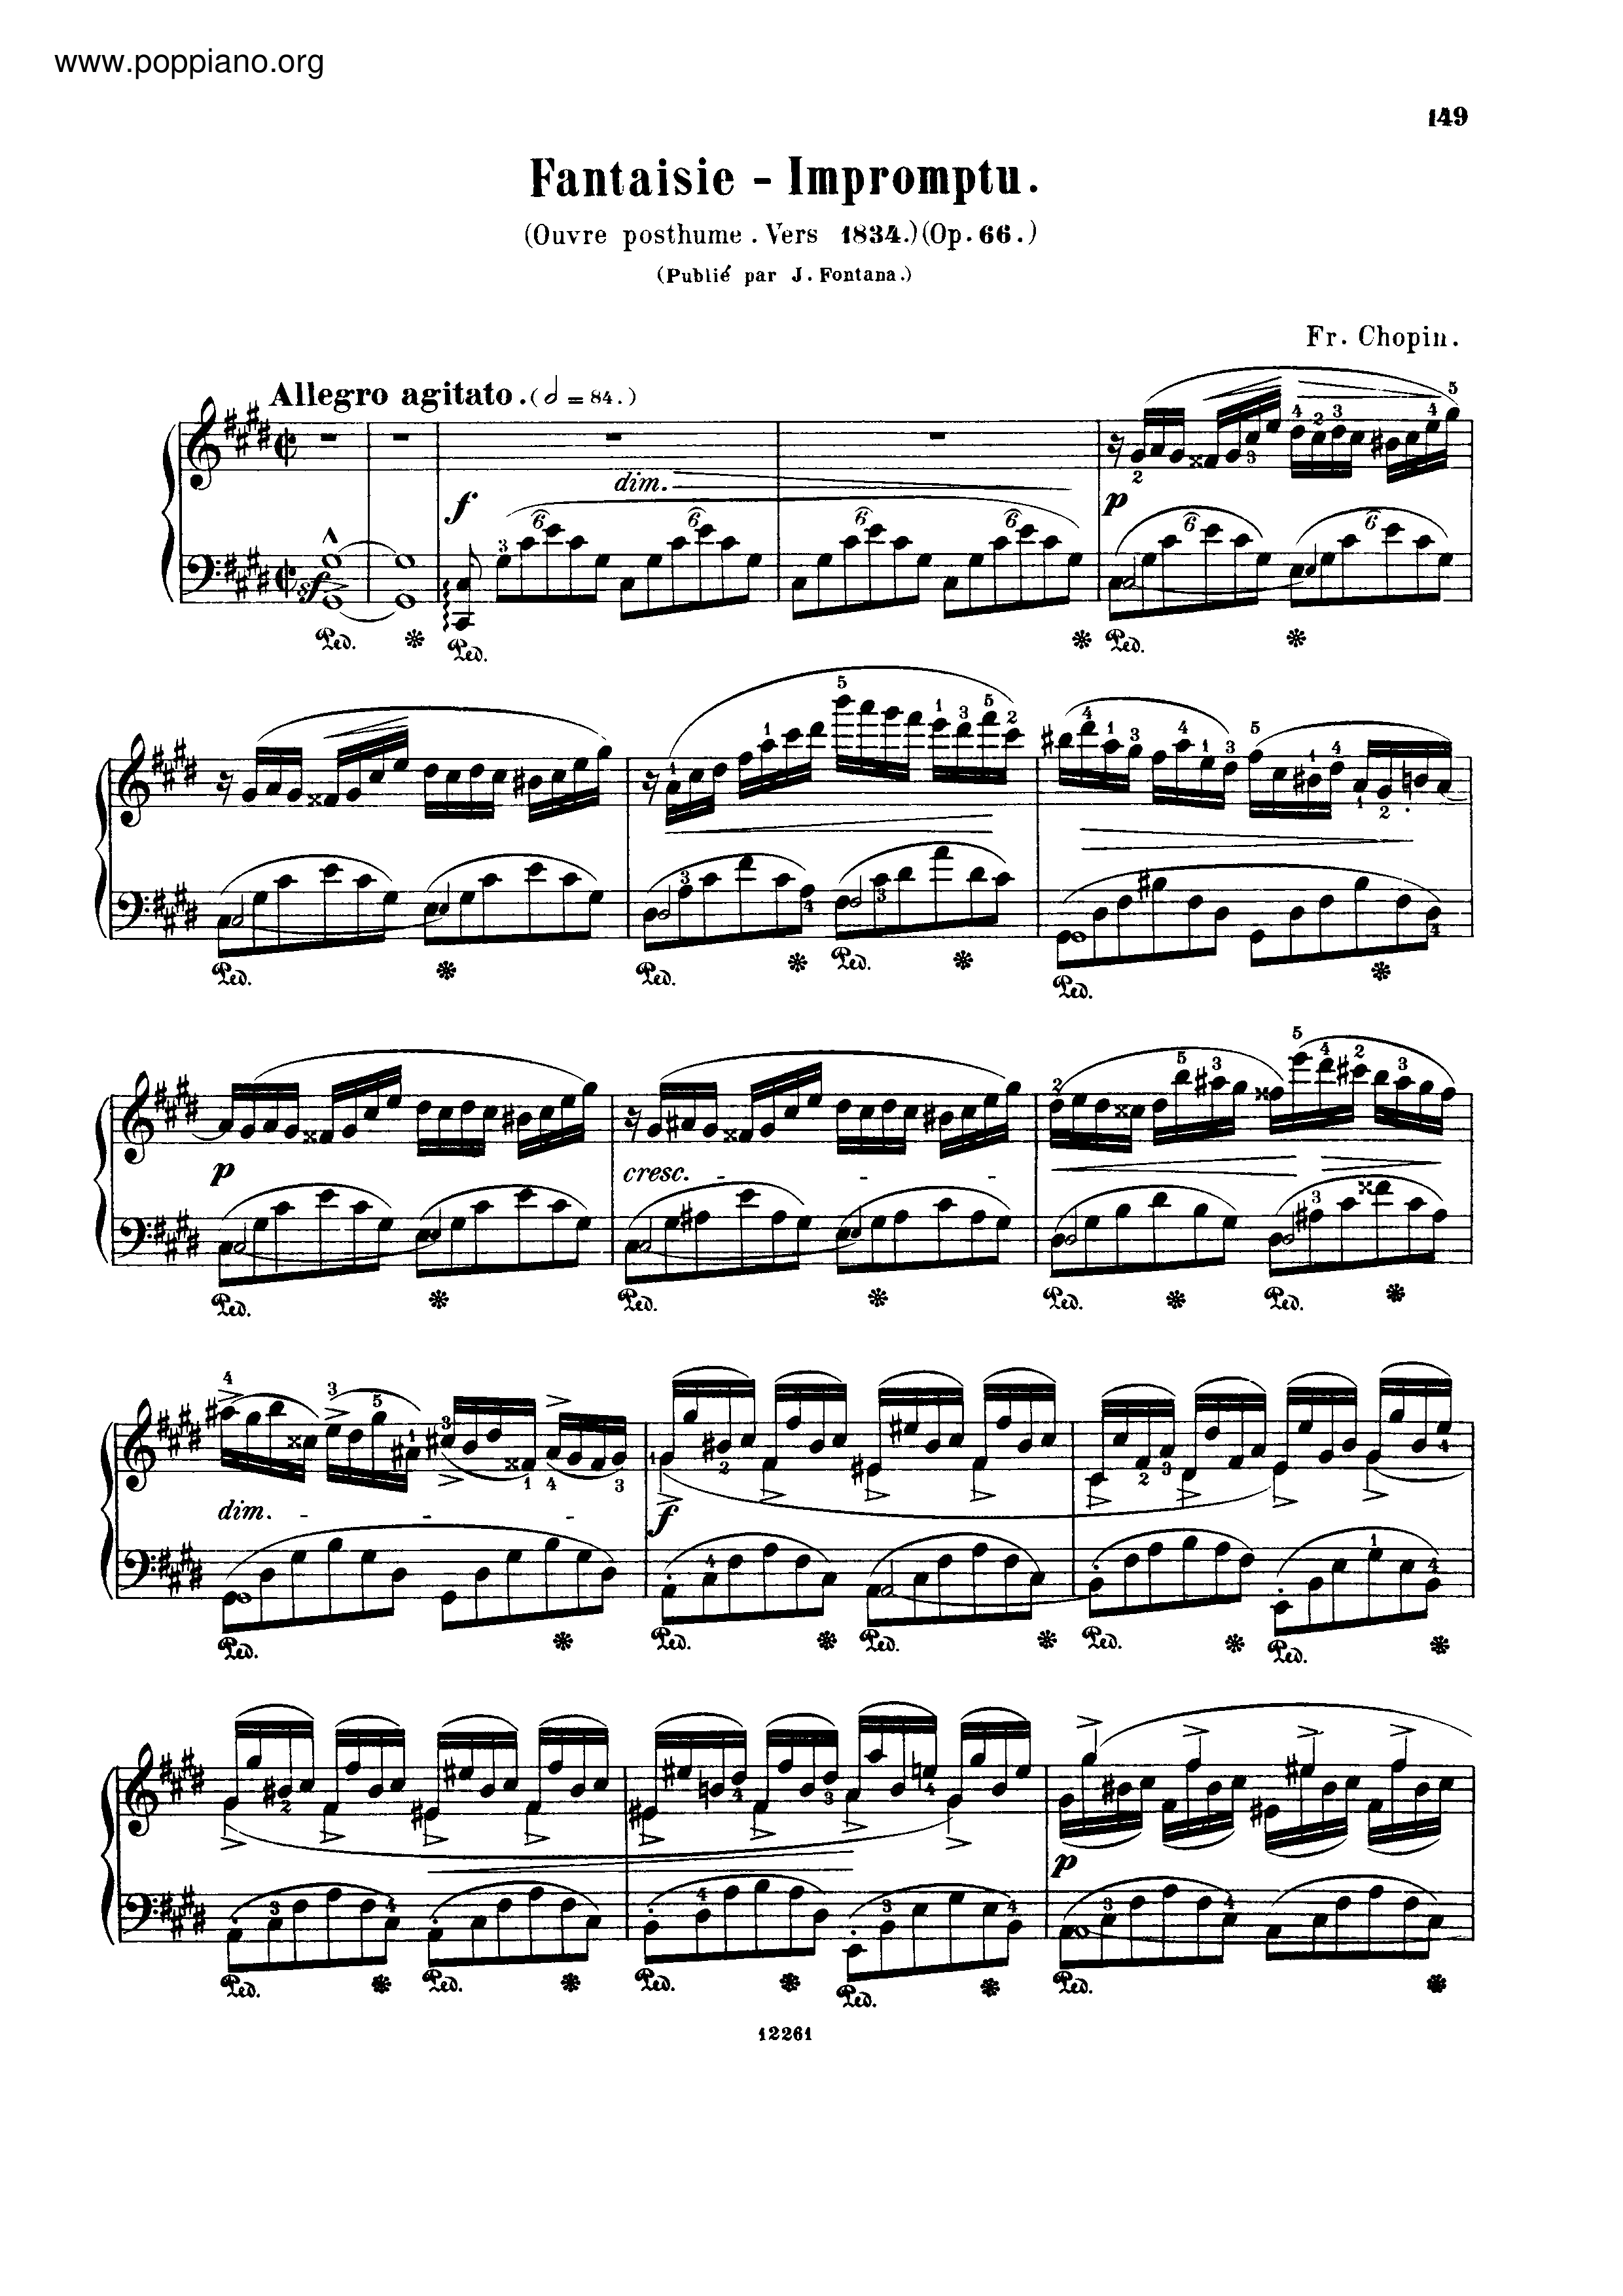 Fantasie Impromptu Op. 66 即興幻想曲琴譜